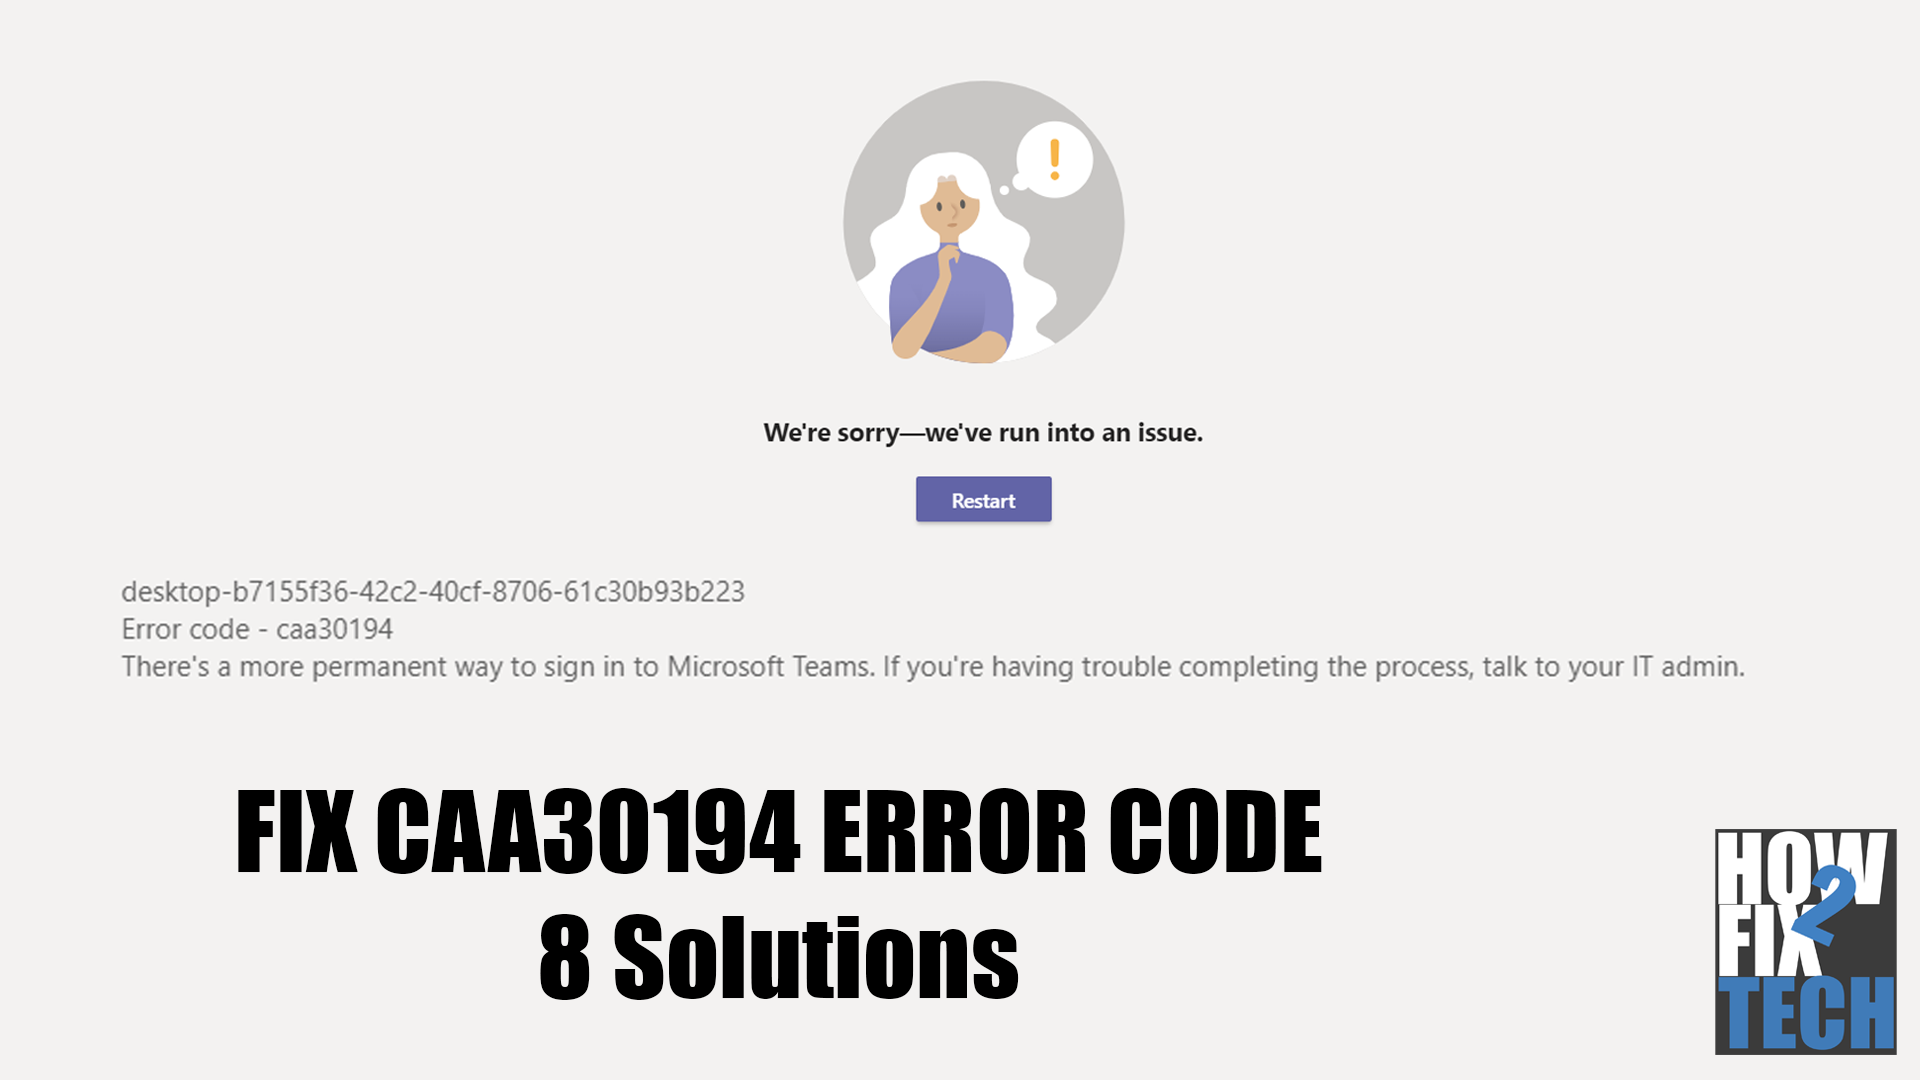 Fix: Error Code CAA30194 on Microsoft Teams